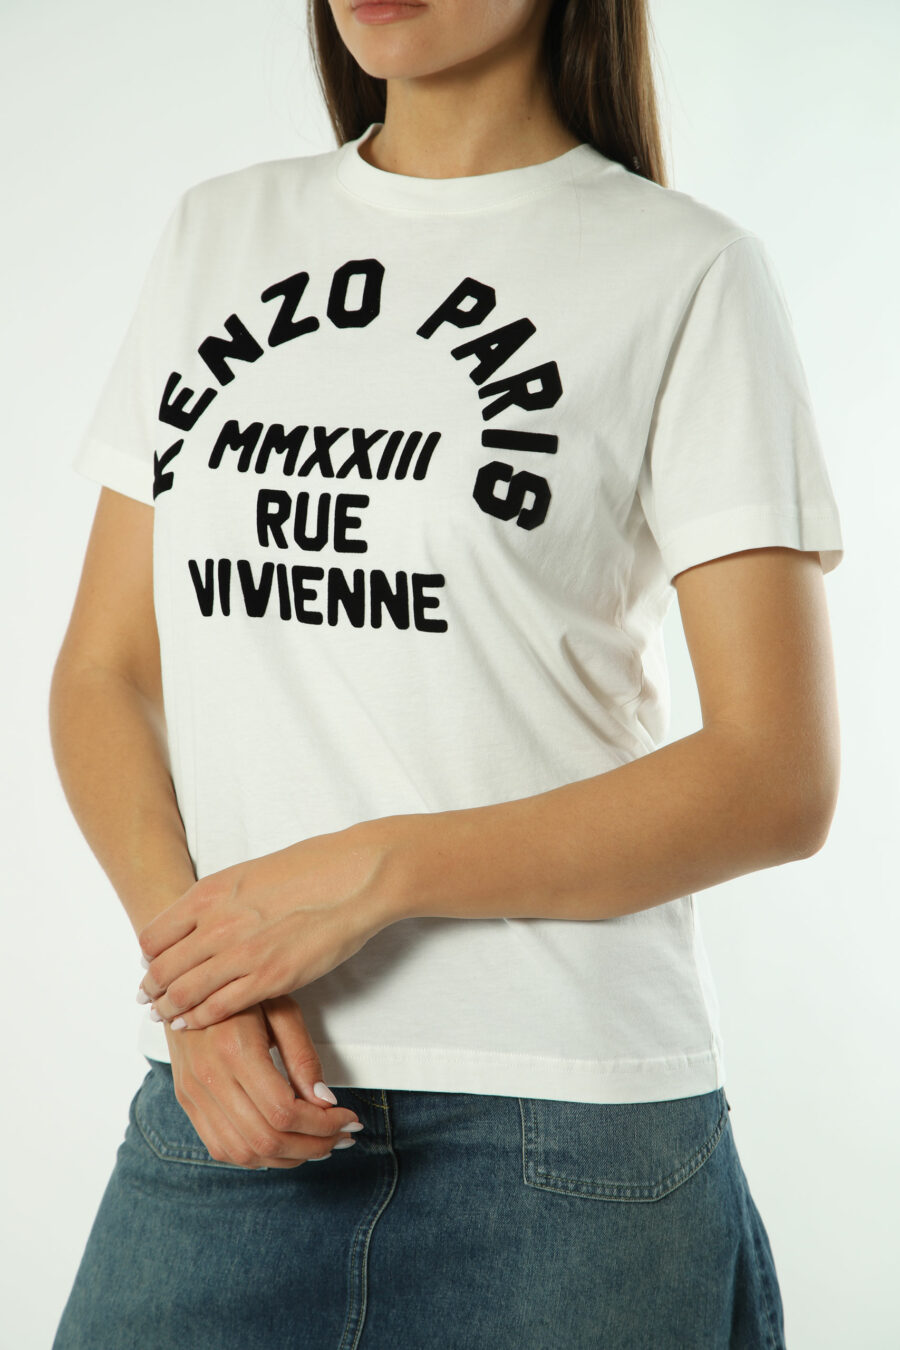 Camiseta blanca con maxilogo "rue vivenne" negro - Photos 1321